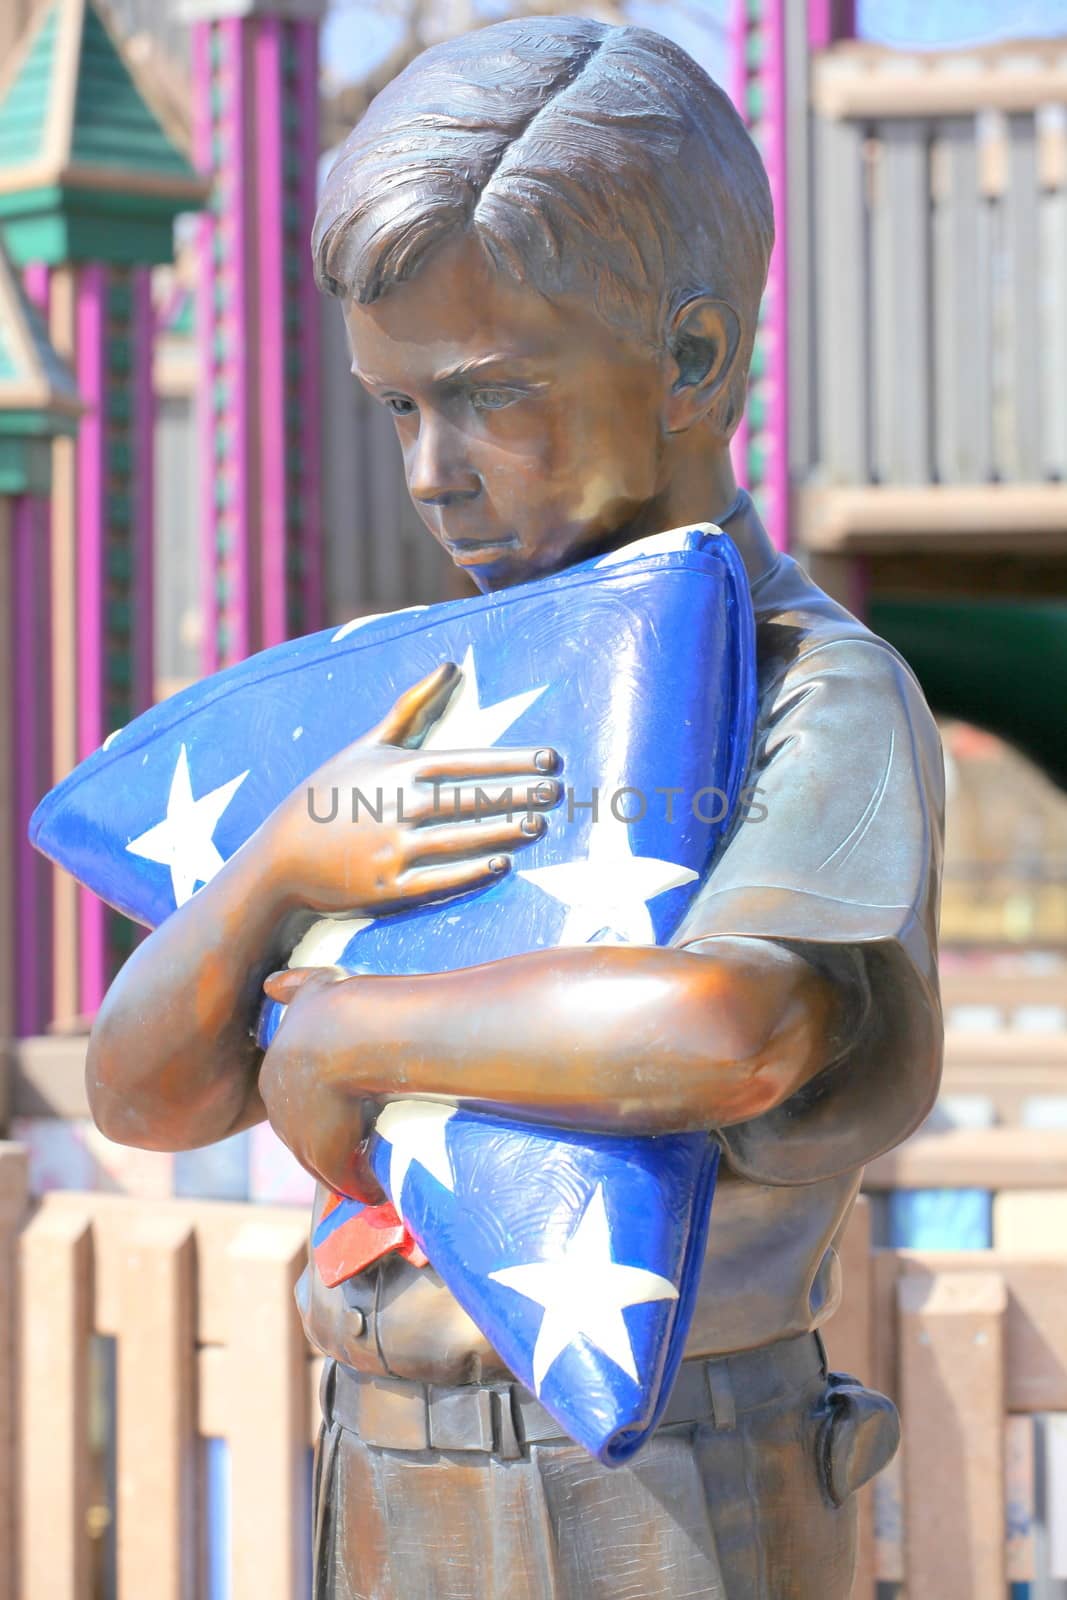 Boy scout statue. by oscarcwilliams